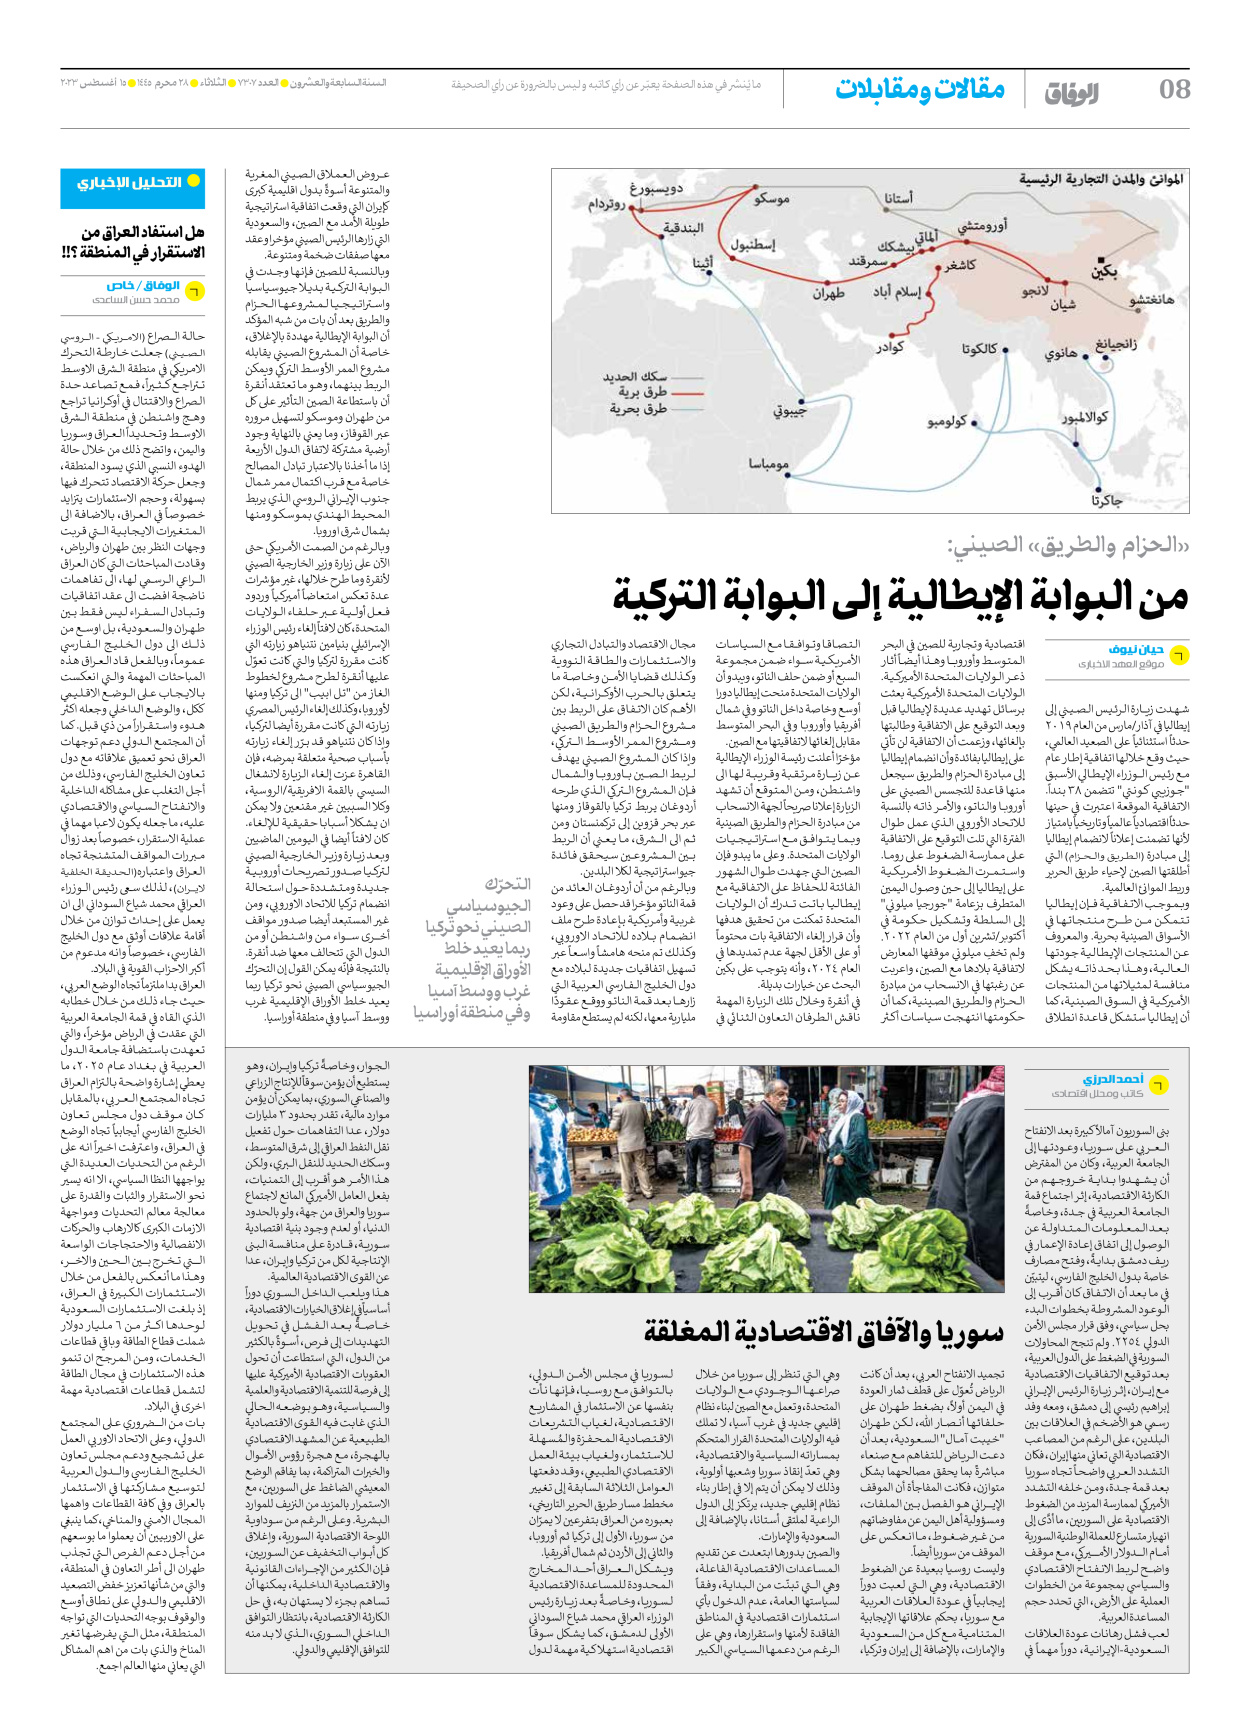 صحیفة ایران الدولیة الوفاق - العدد سبعة آلاف وثلاثمائة وسبعة - ١٤ أغسطس ٢٠٢٣ - الصفحة ۸